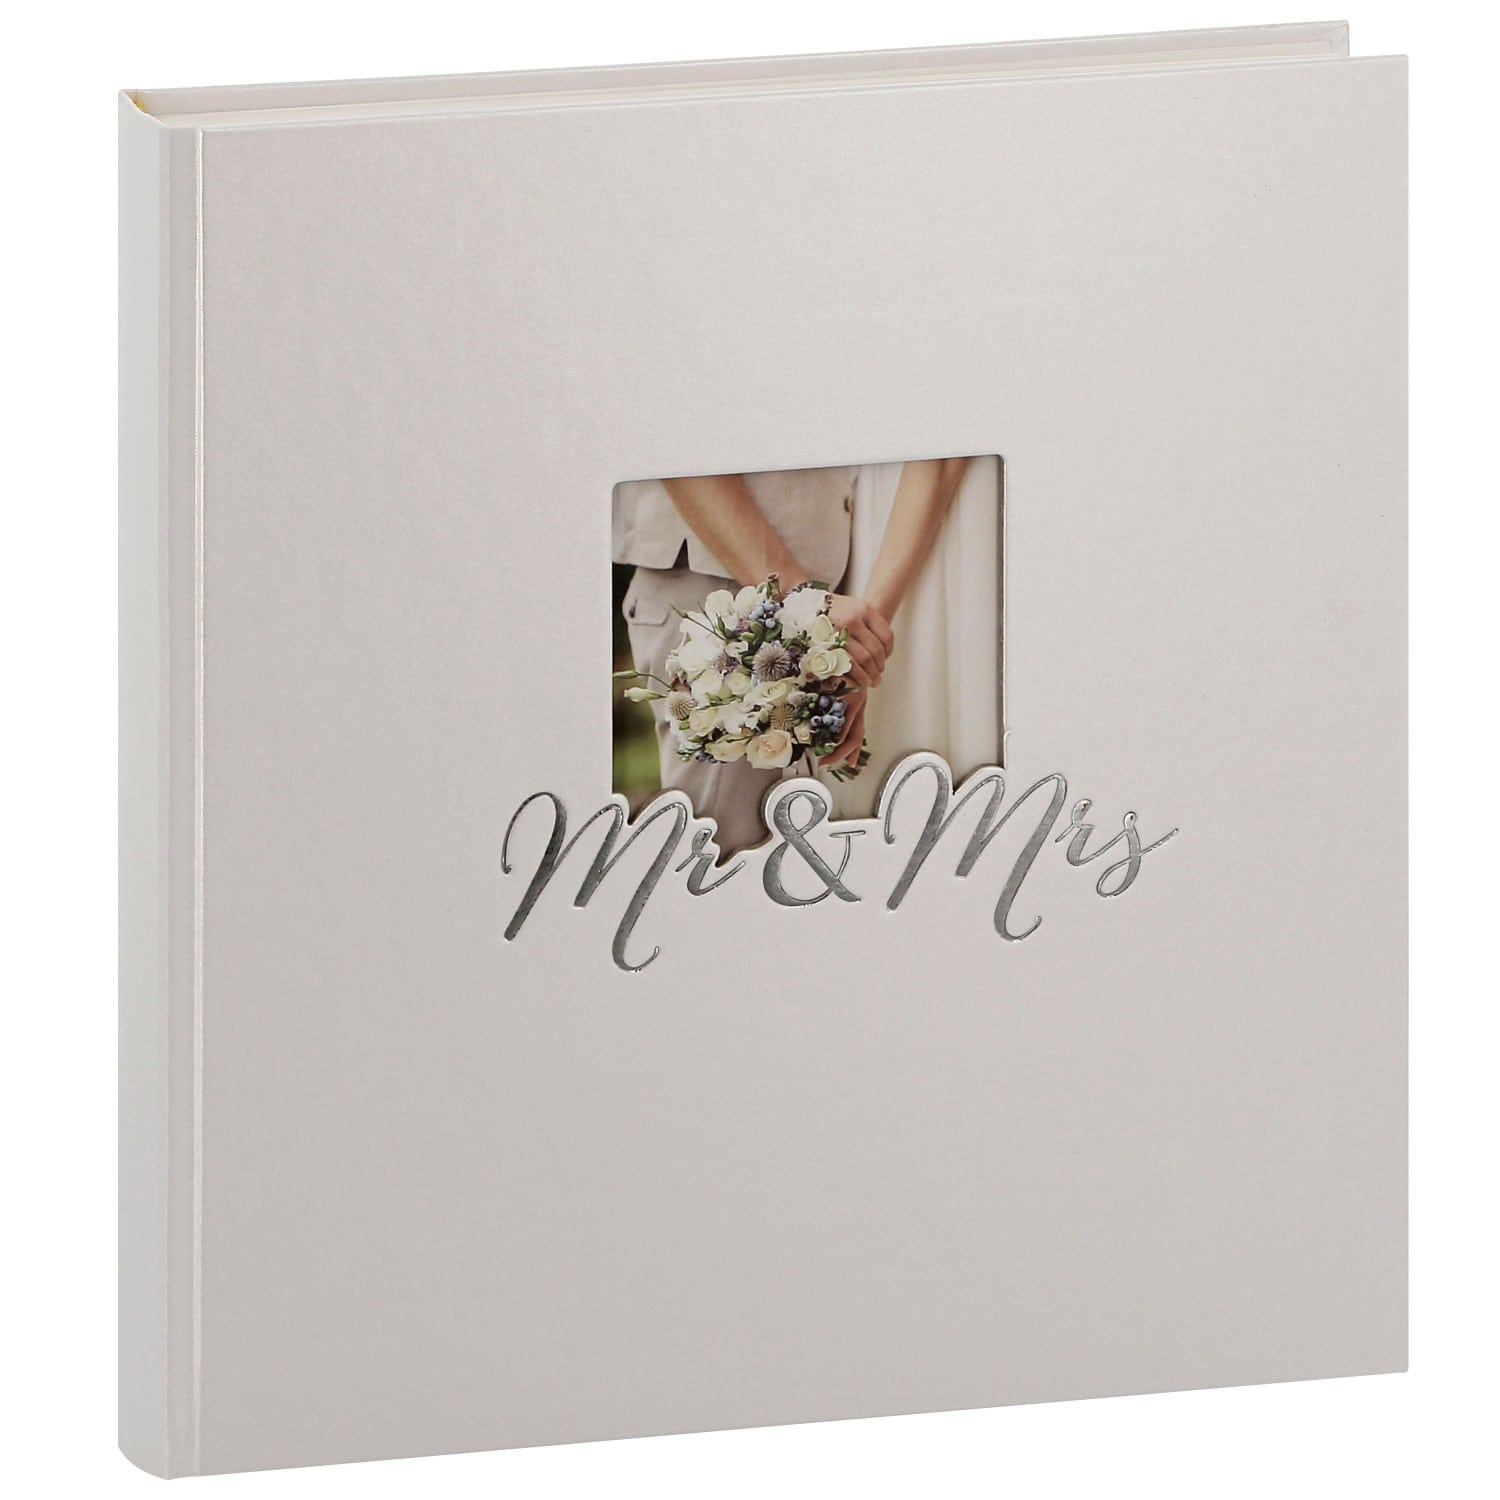 Album photo GOLDBUCH traditionnel Mariage MR & MRS - 60 pages blanches +  feuillets cristal - 240 photos - Couverture Blanche 30x31cm + fenêtre  (Reconditionné)